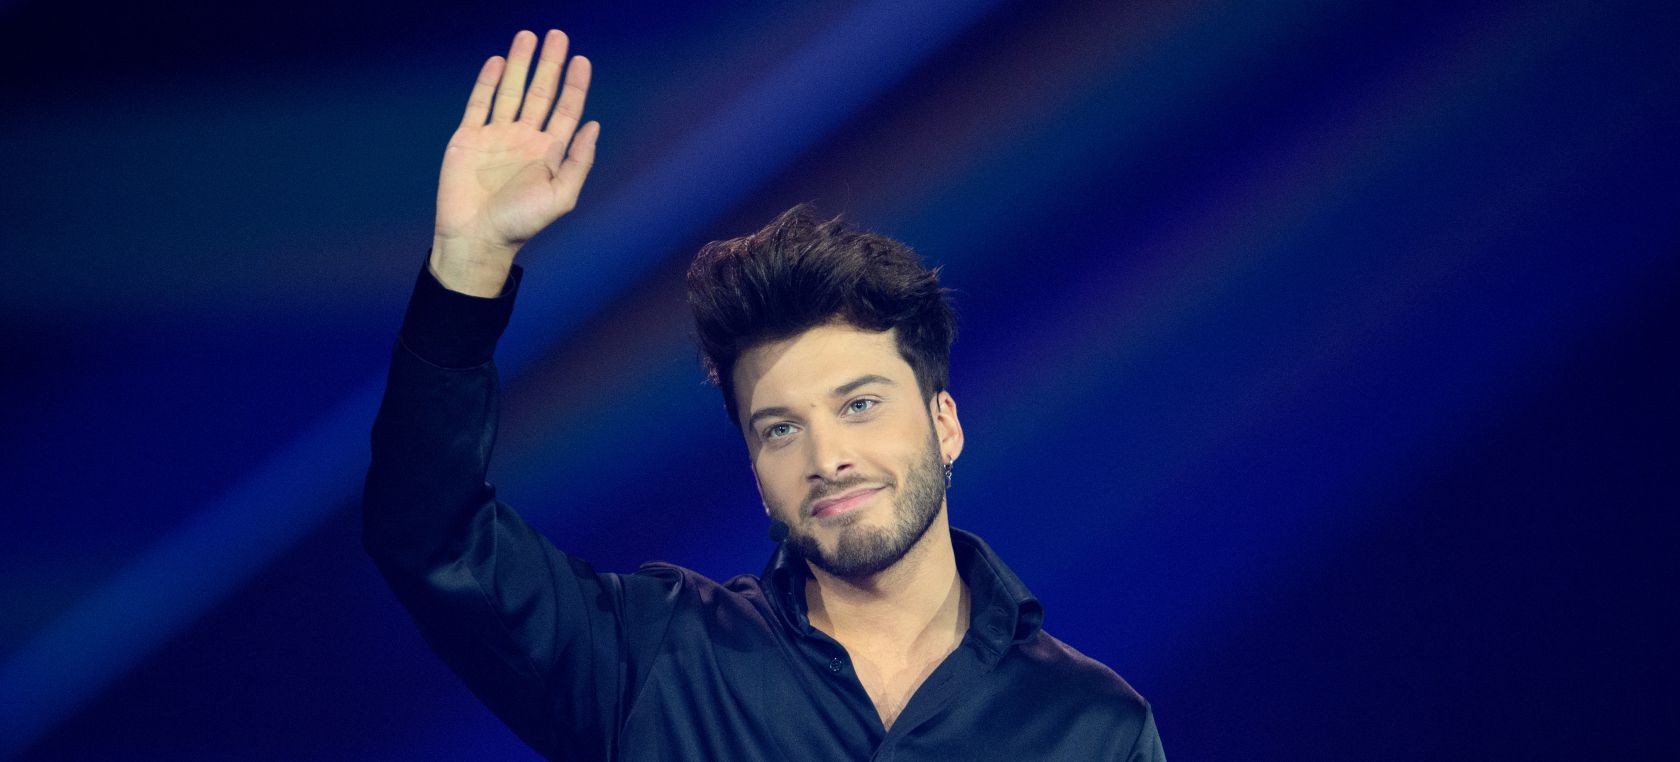 Blas Cantó tiene una sorpresa preparada y la representante de Grecia en Eurovisión comenta: “Oh, excitante”